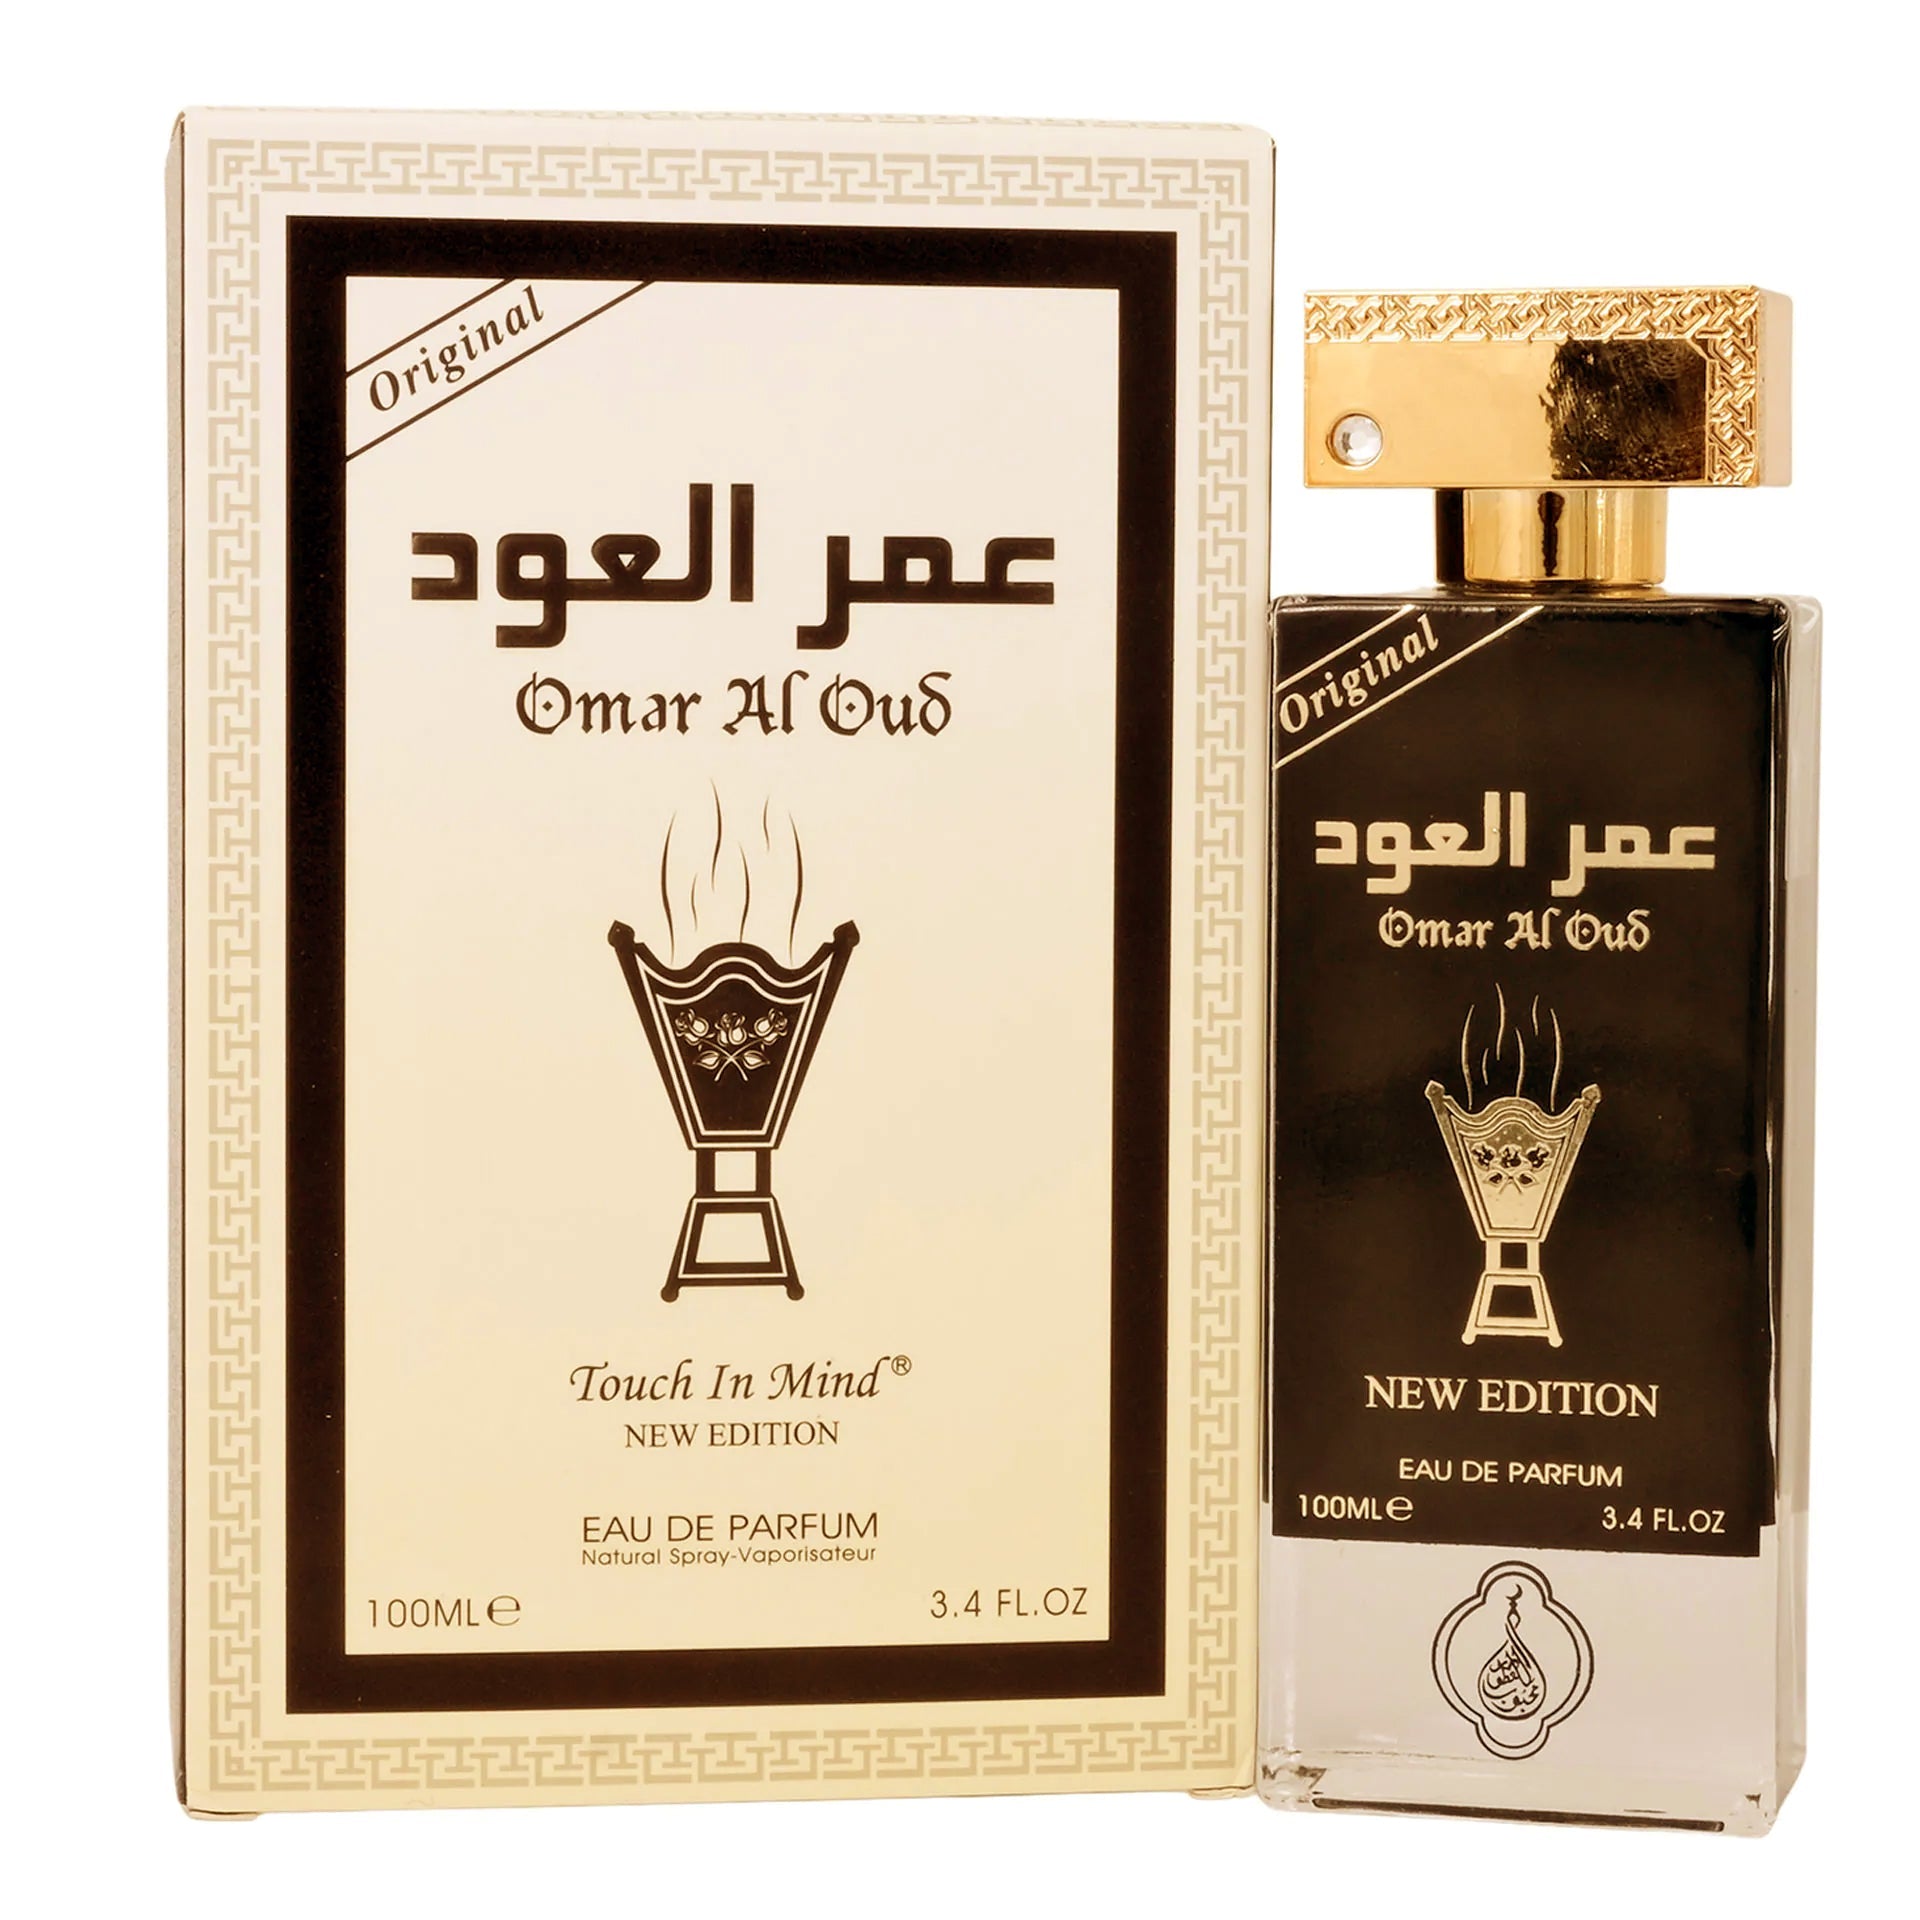 Omar al Oud Eau De Parfum New Edition 100ml Value Pack of 2 